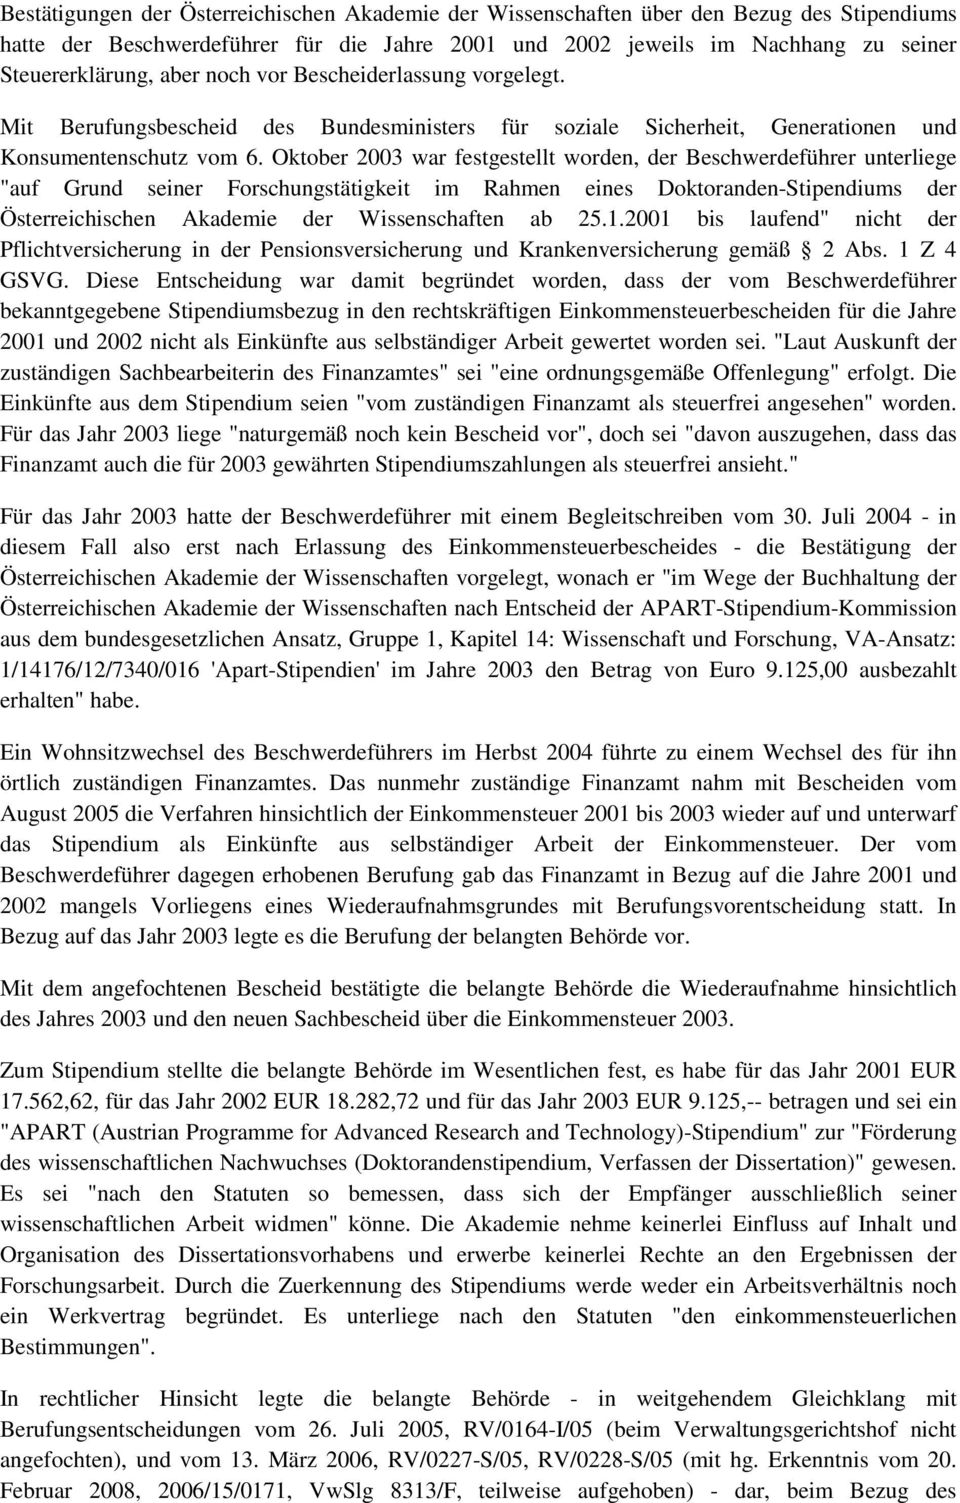 Oktober 2003 war festgestellt worden, der Beschwerdeführer unterliege "auf Grund seiner Forschungstätigkeit im Rahmen eines Doktoranden-Stipendiums der Österreichischen Akademie der Wissenschaften ab